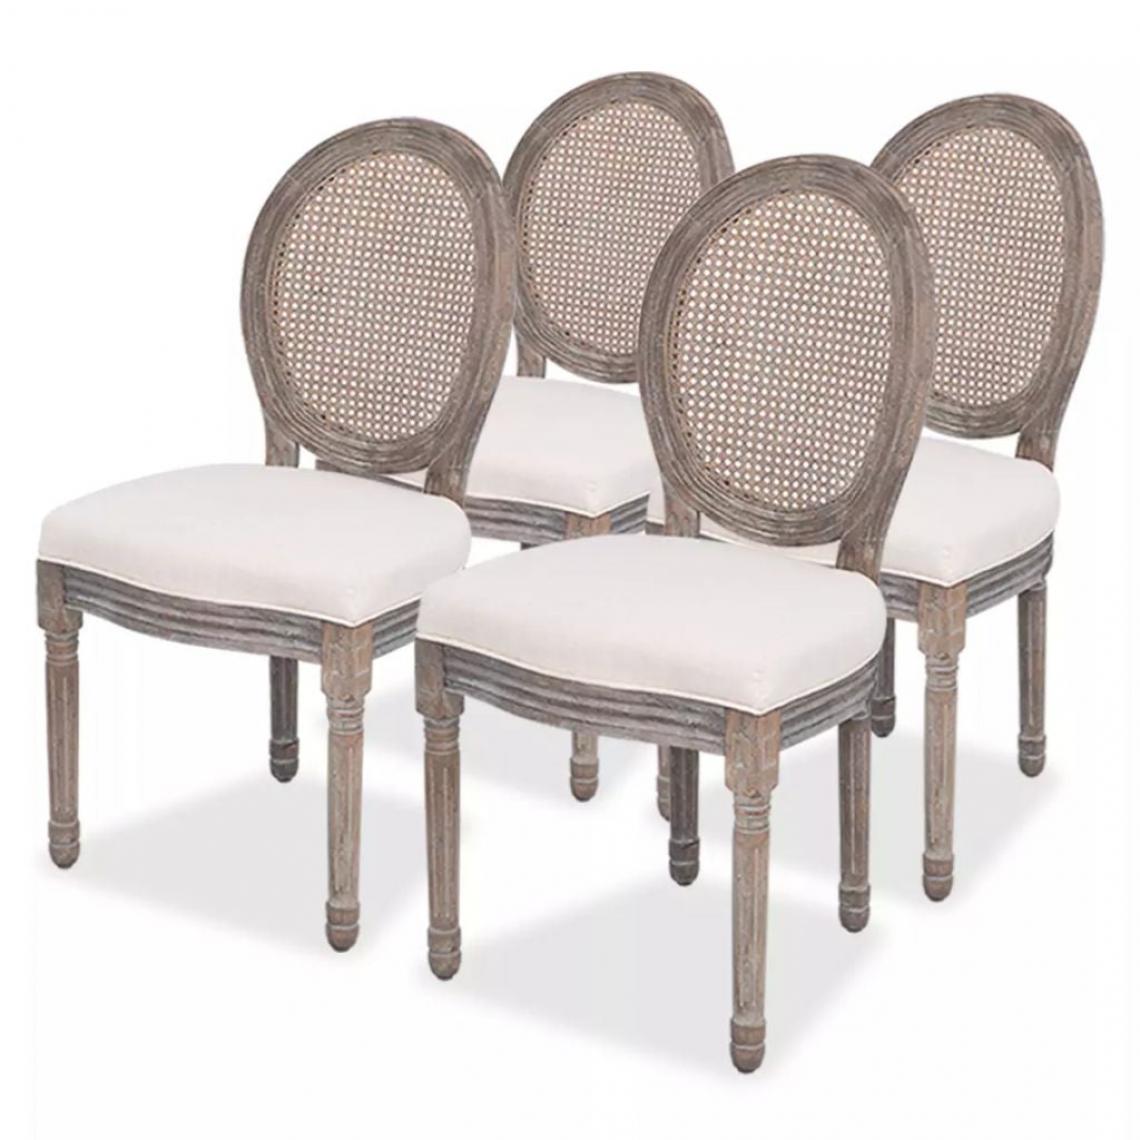 Decoshop26 - Lot de 4 chaises de salle à manger cuisine design intemporel tissu crème CDS021470 - Chaises